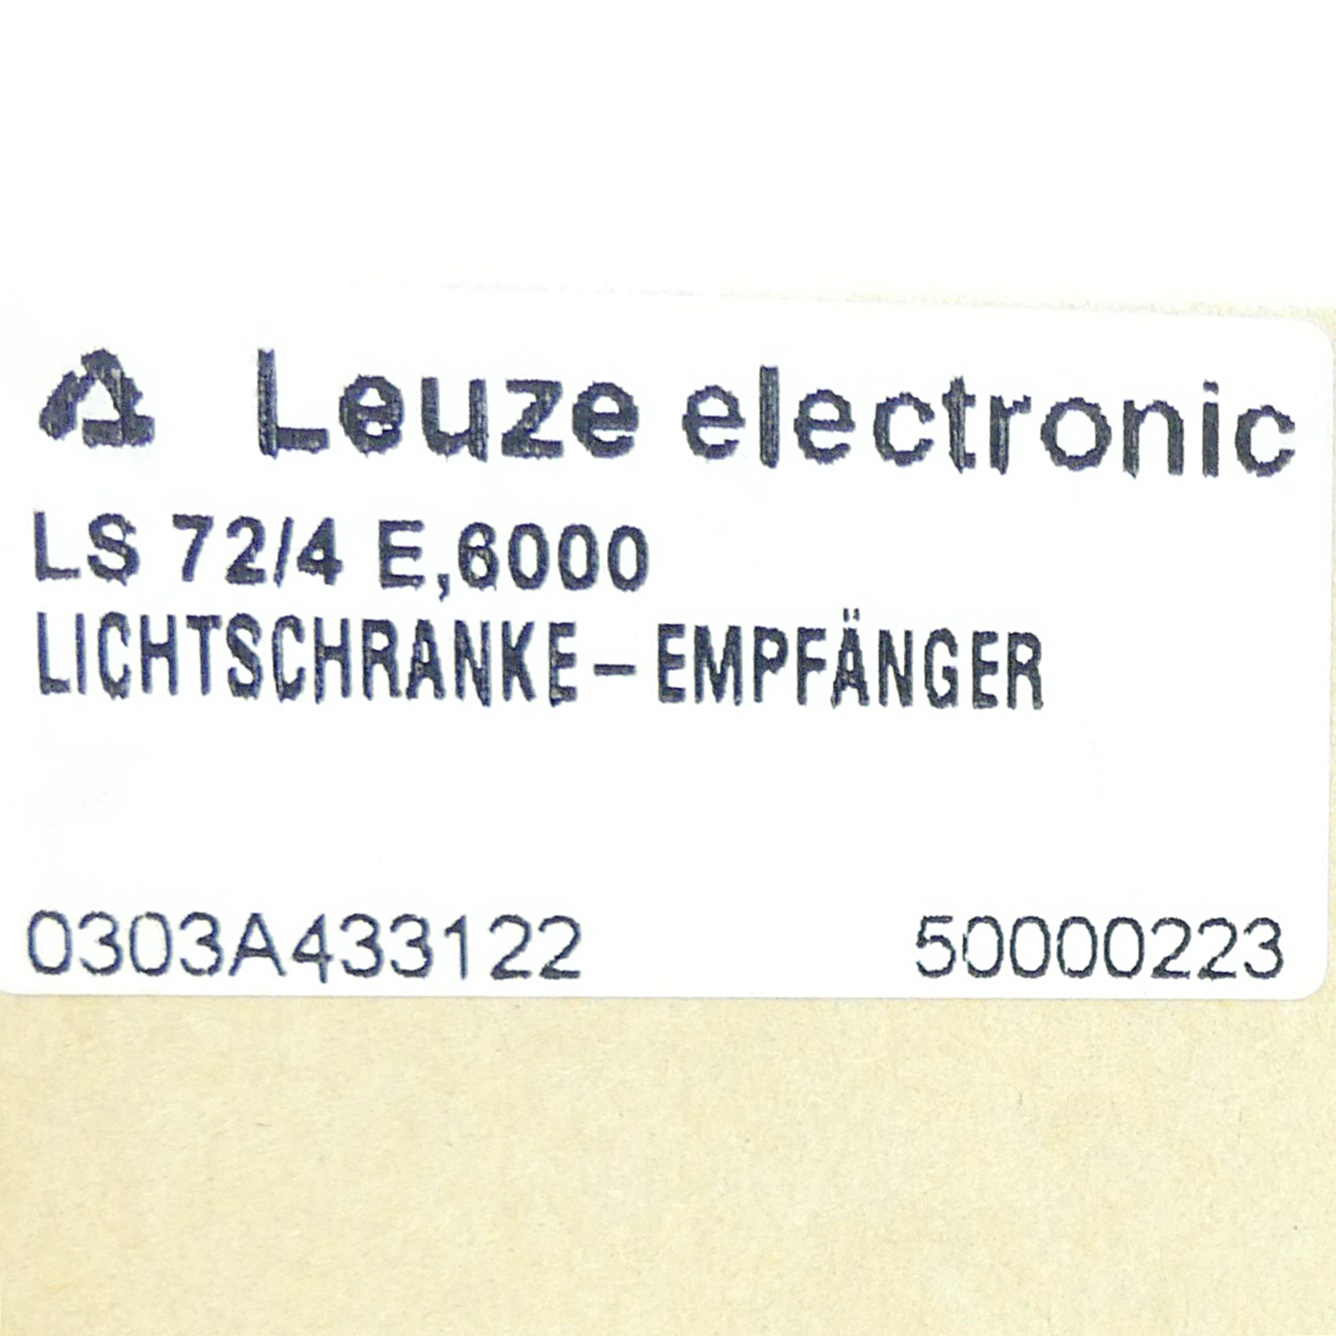 Light barrier LS 72/4 E 